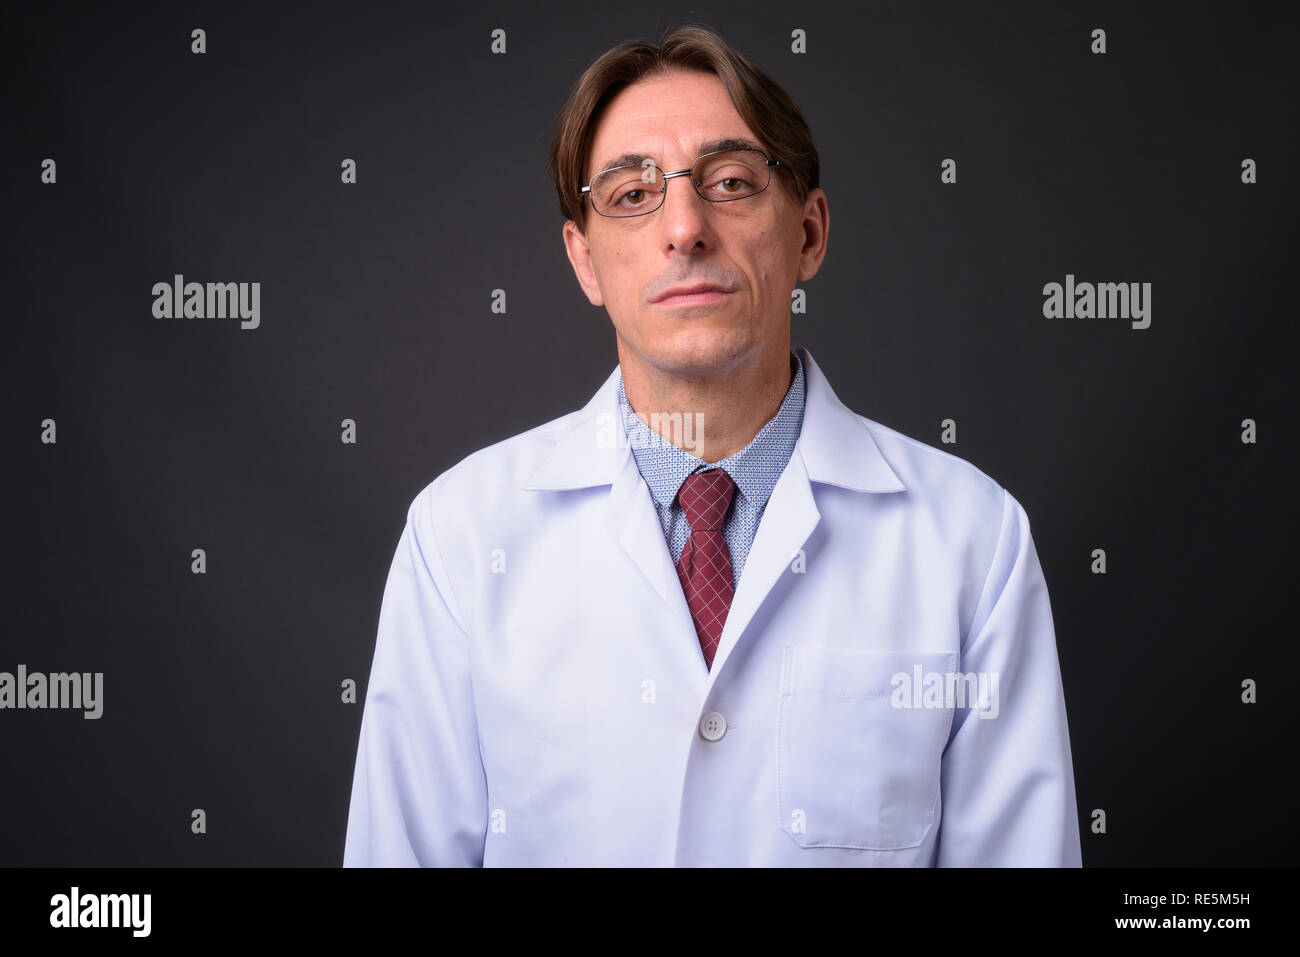 Homme mature beau médecin italien contre l'arrière-plan gris Banque D'Images